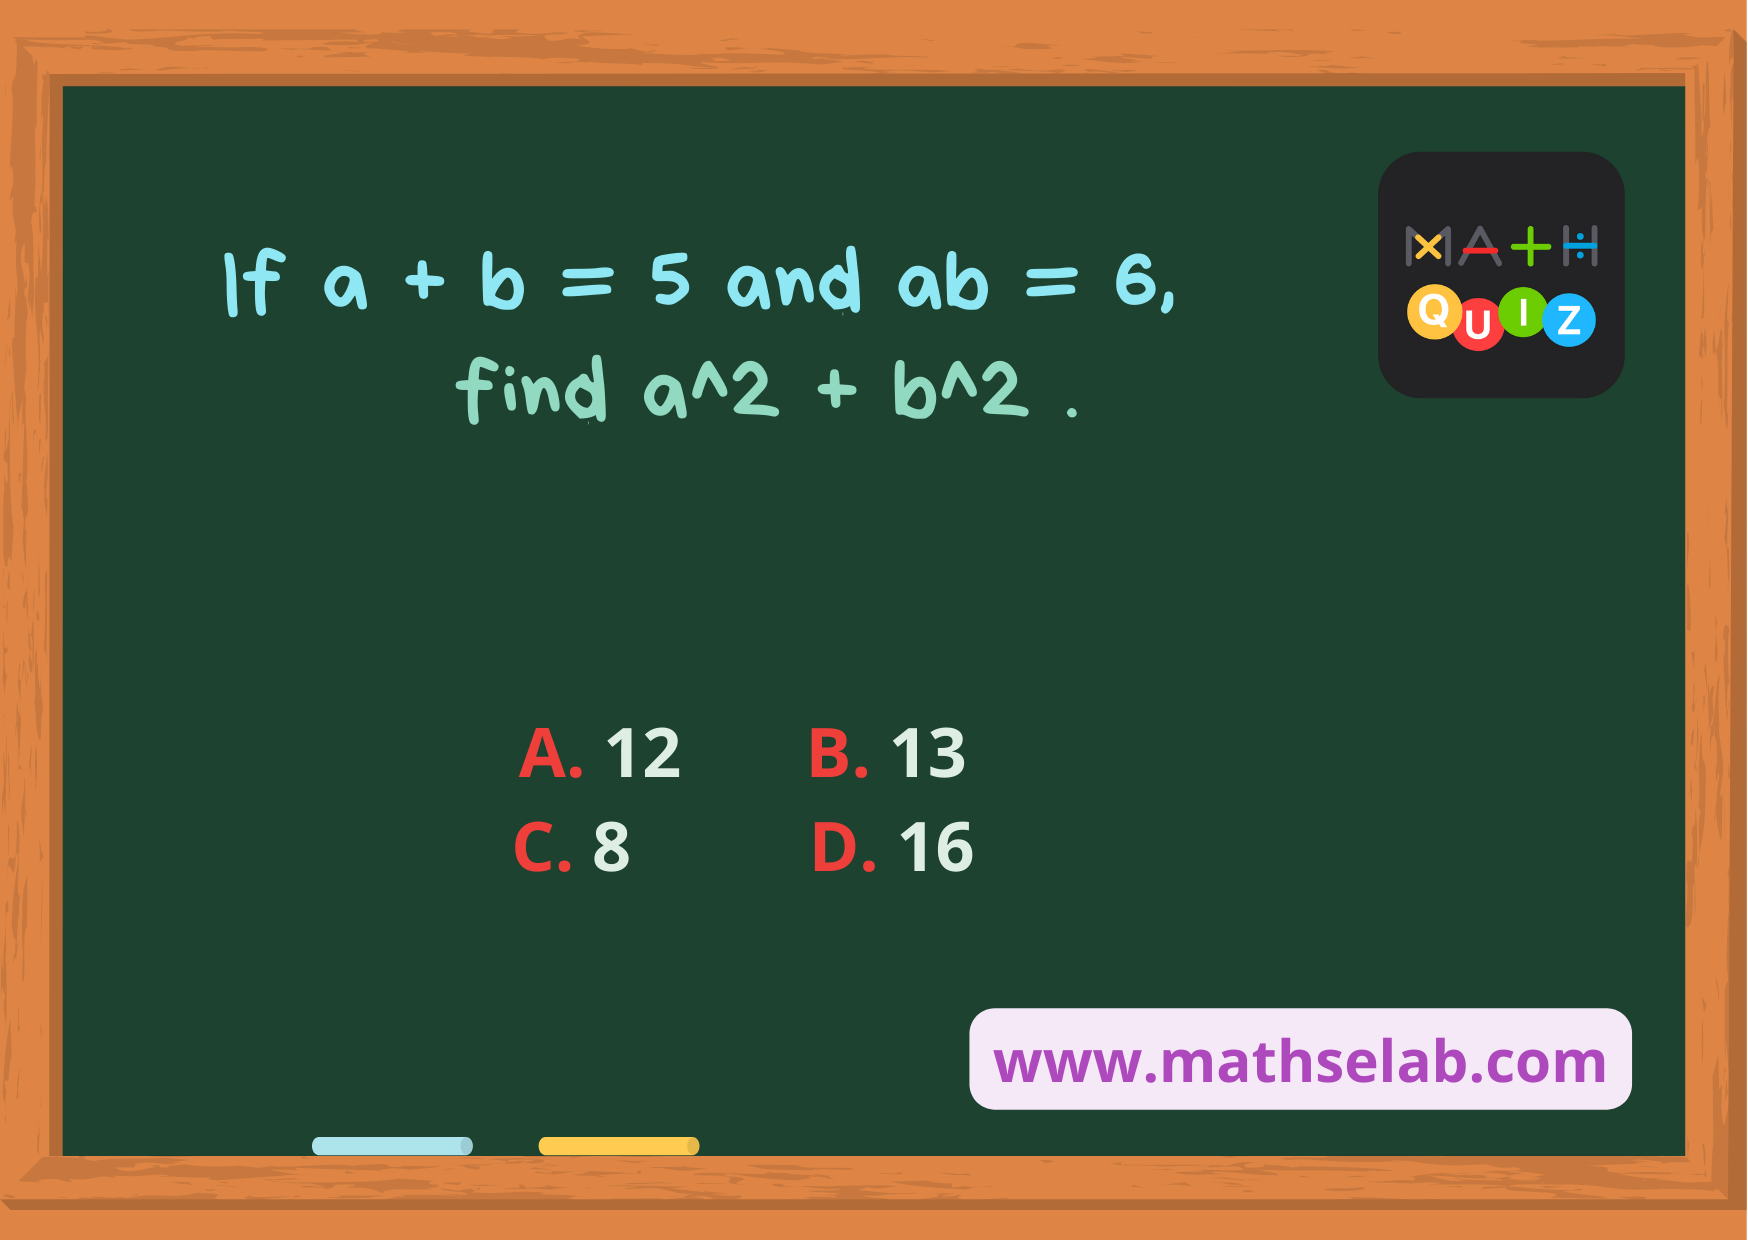 If a + b = 5 and ab = 6, find a^2 + b^2 . - www.mathselab.com